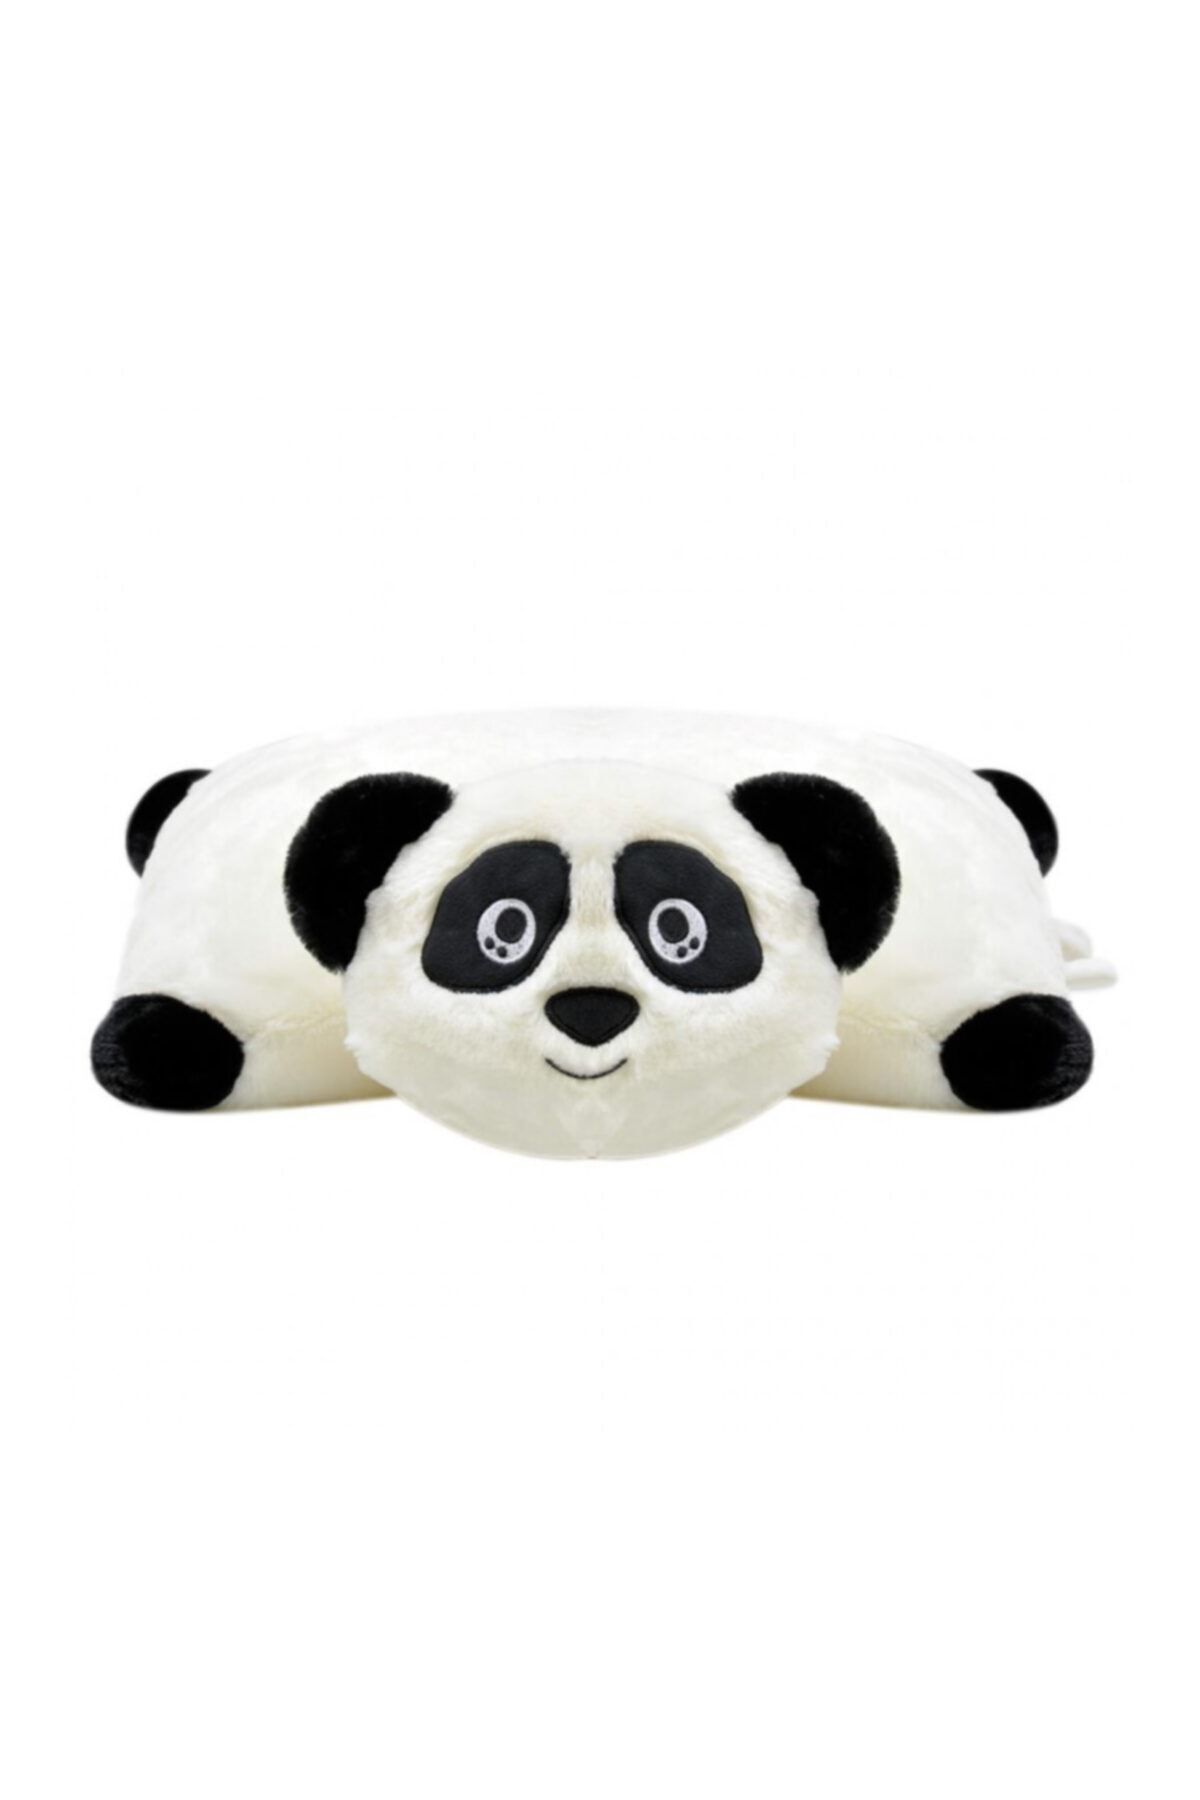 SELAY TOYS Pelüş Panda Yastık 40 Cm